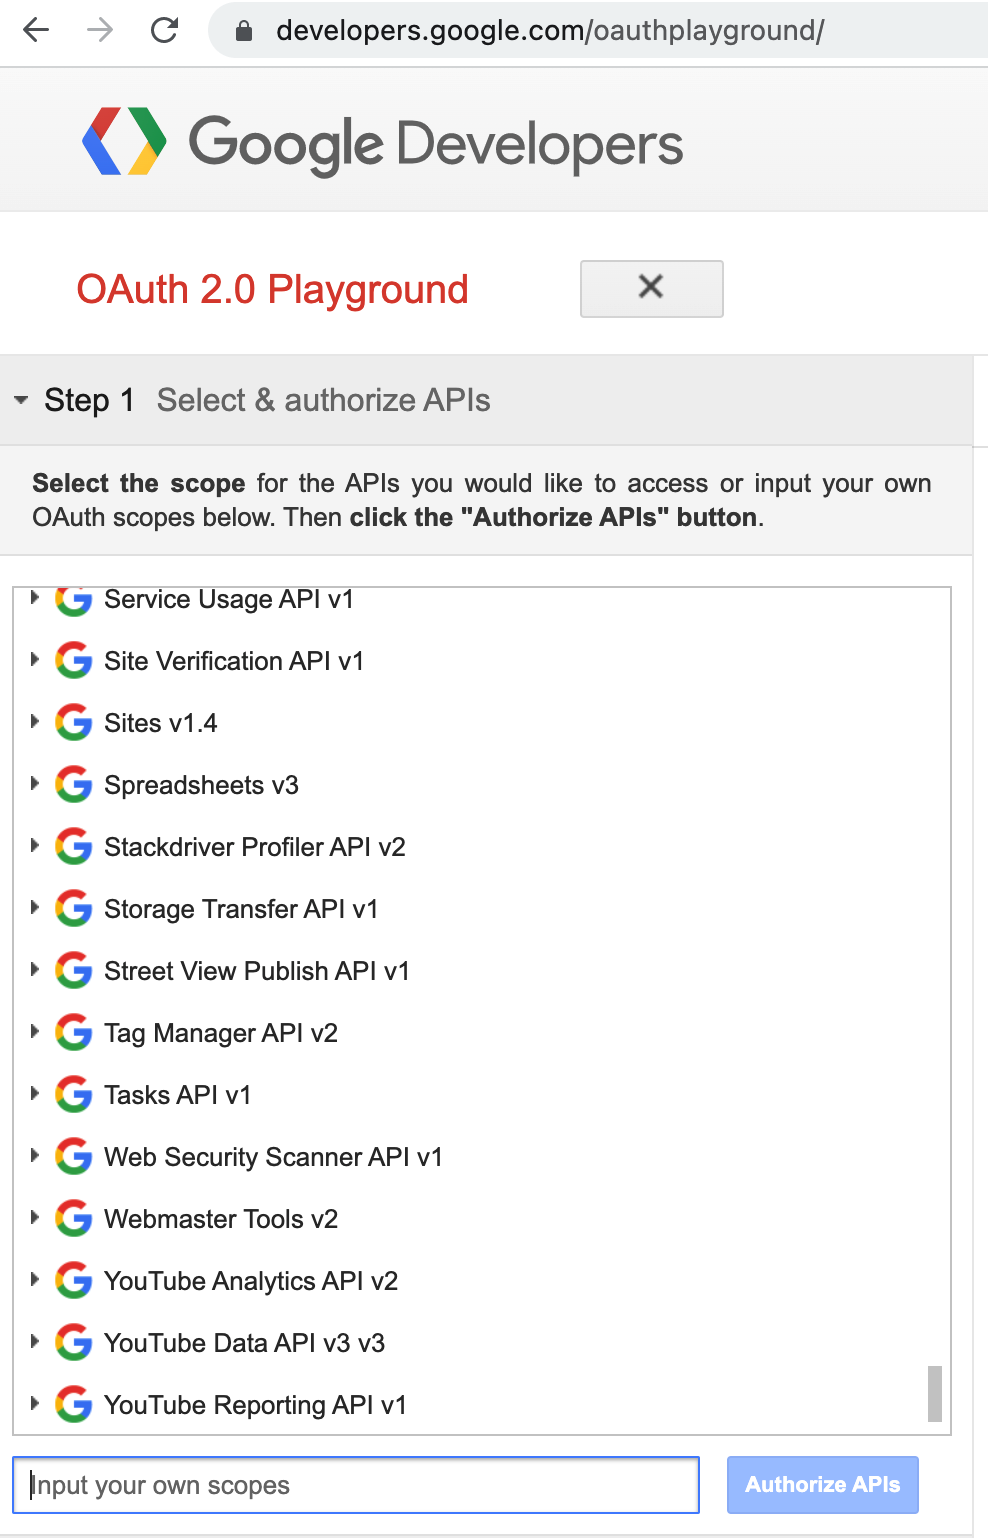 Изображение шага 1 настройки игровой площадки Google OAuth